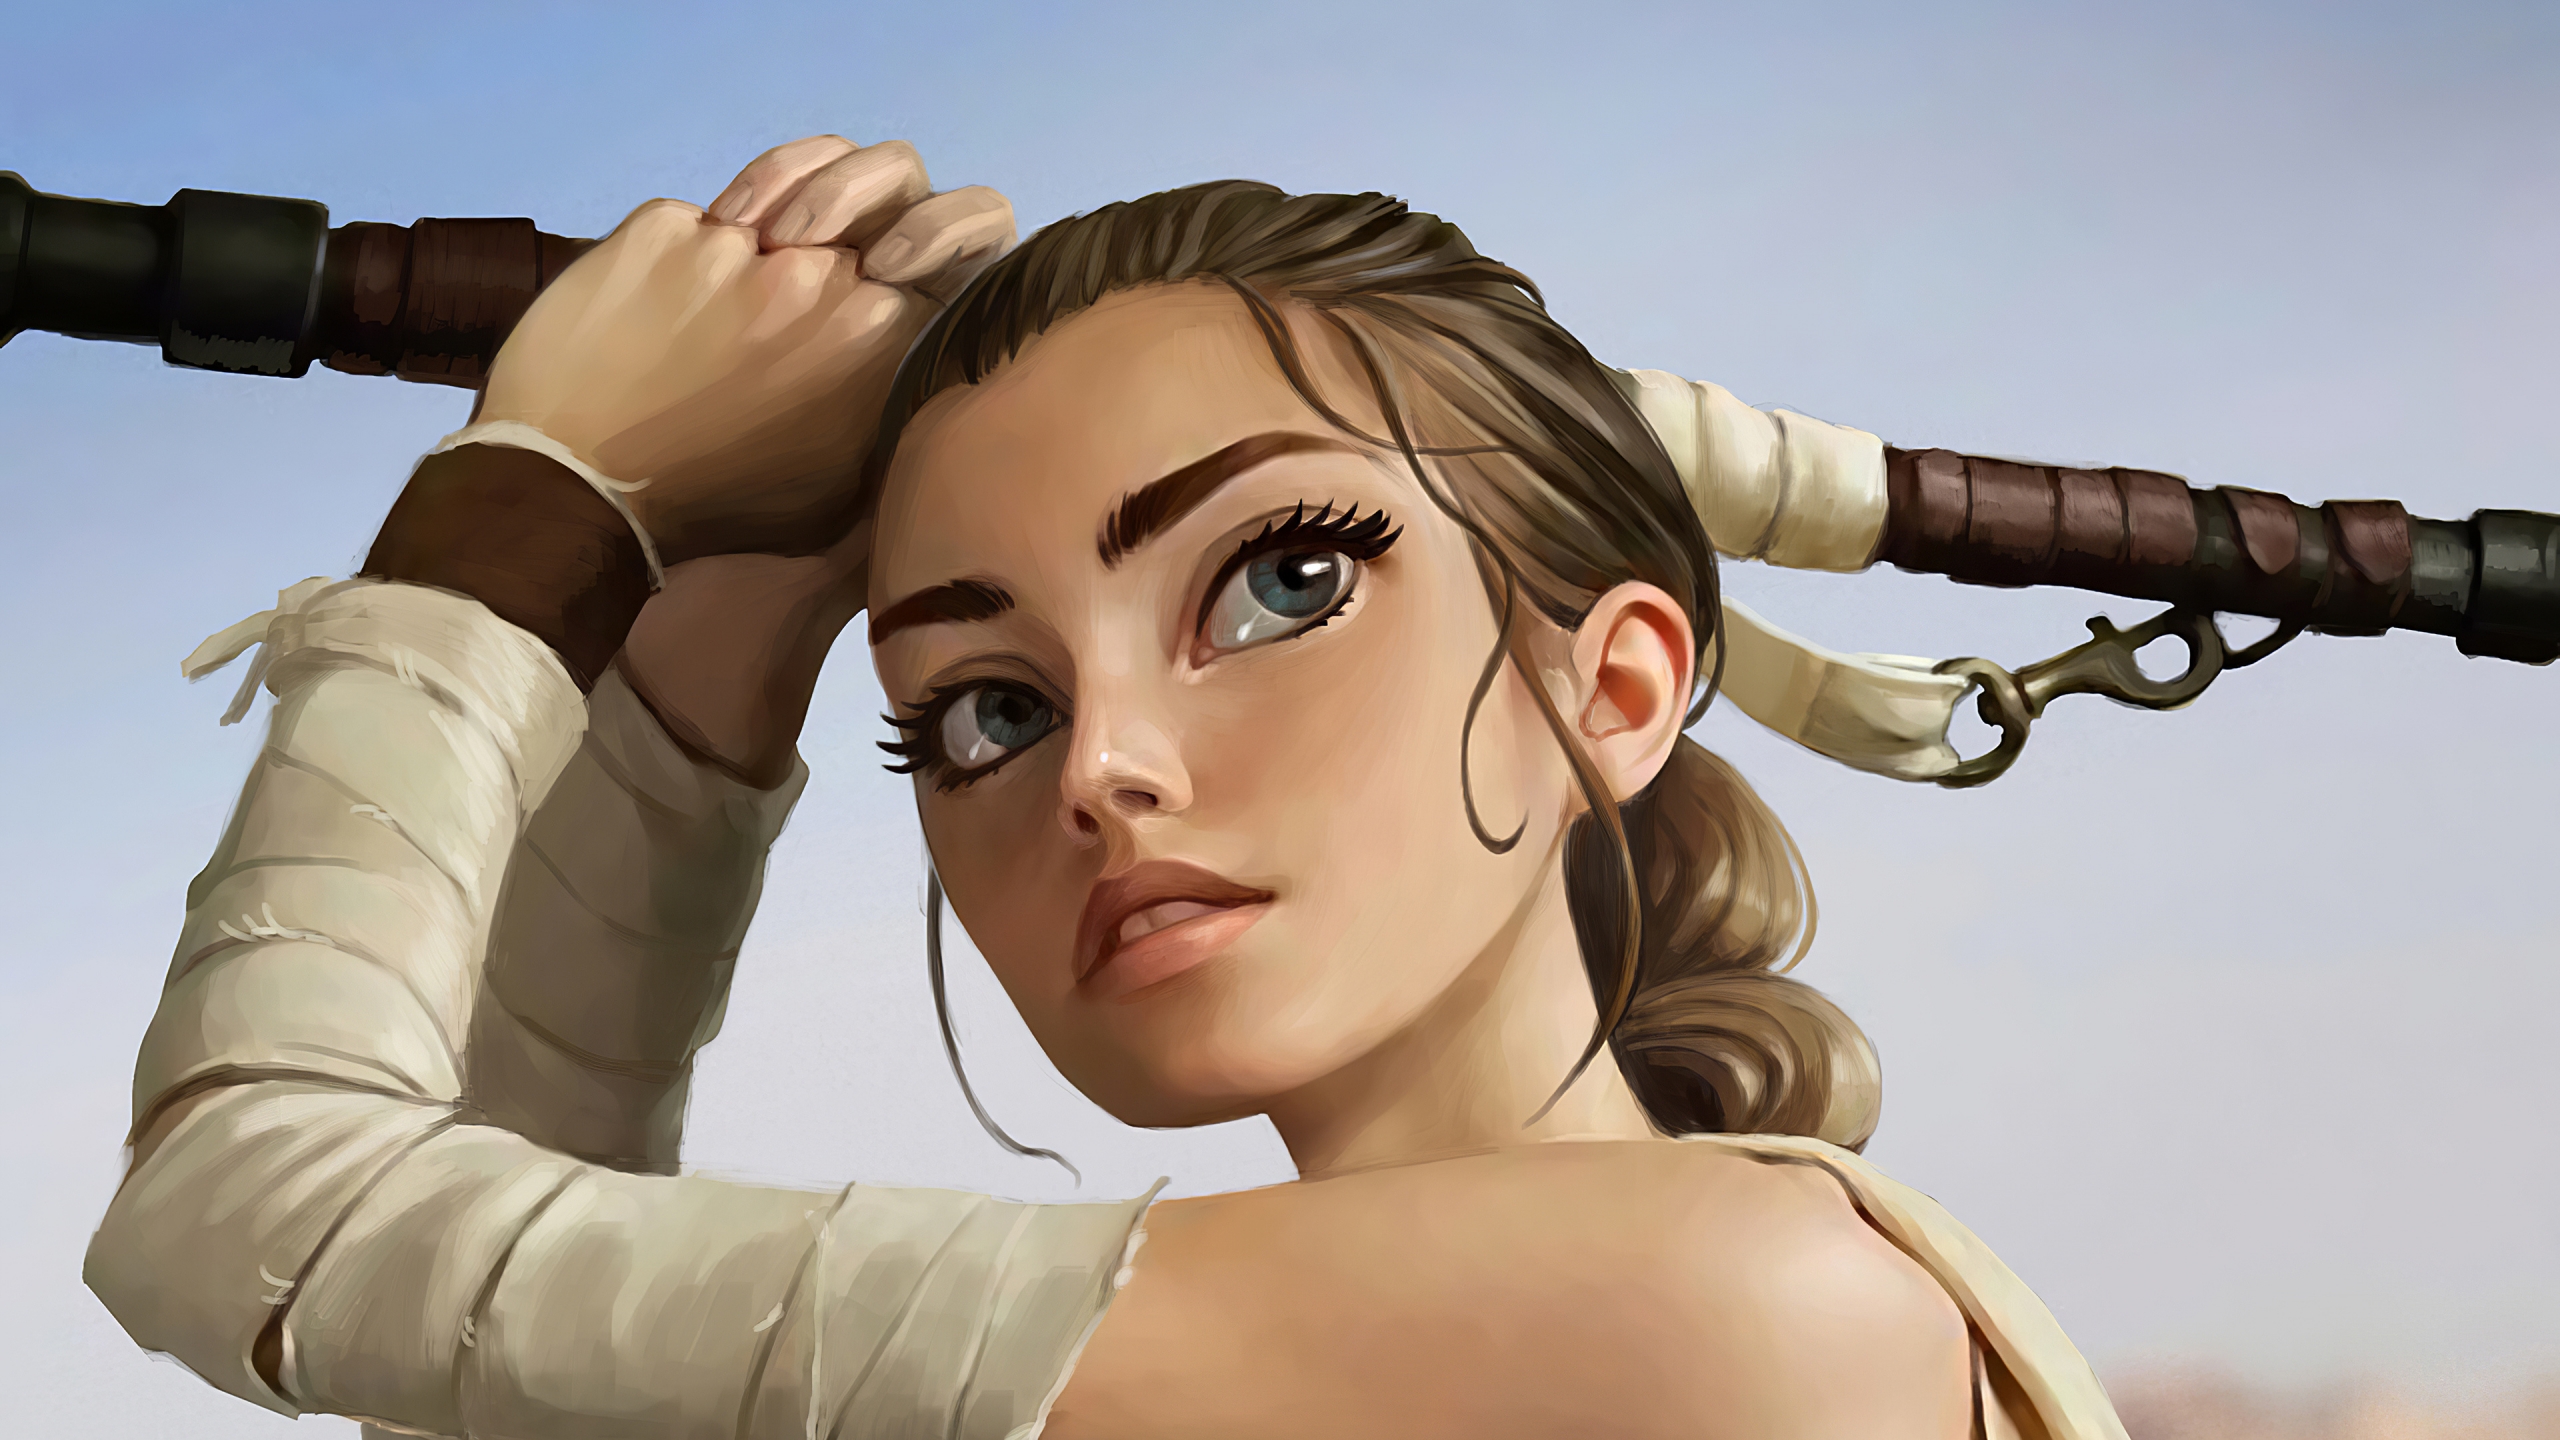 Rey from Star Wars Fanart Wallpaper 4k Ultra HD ID:4584